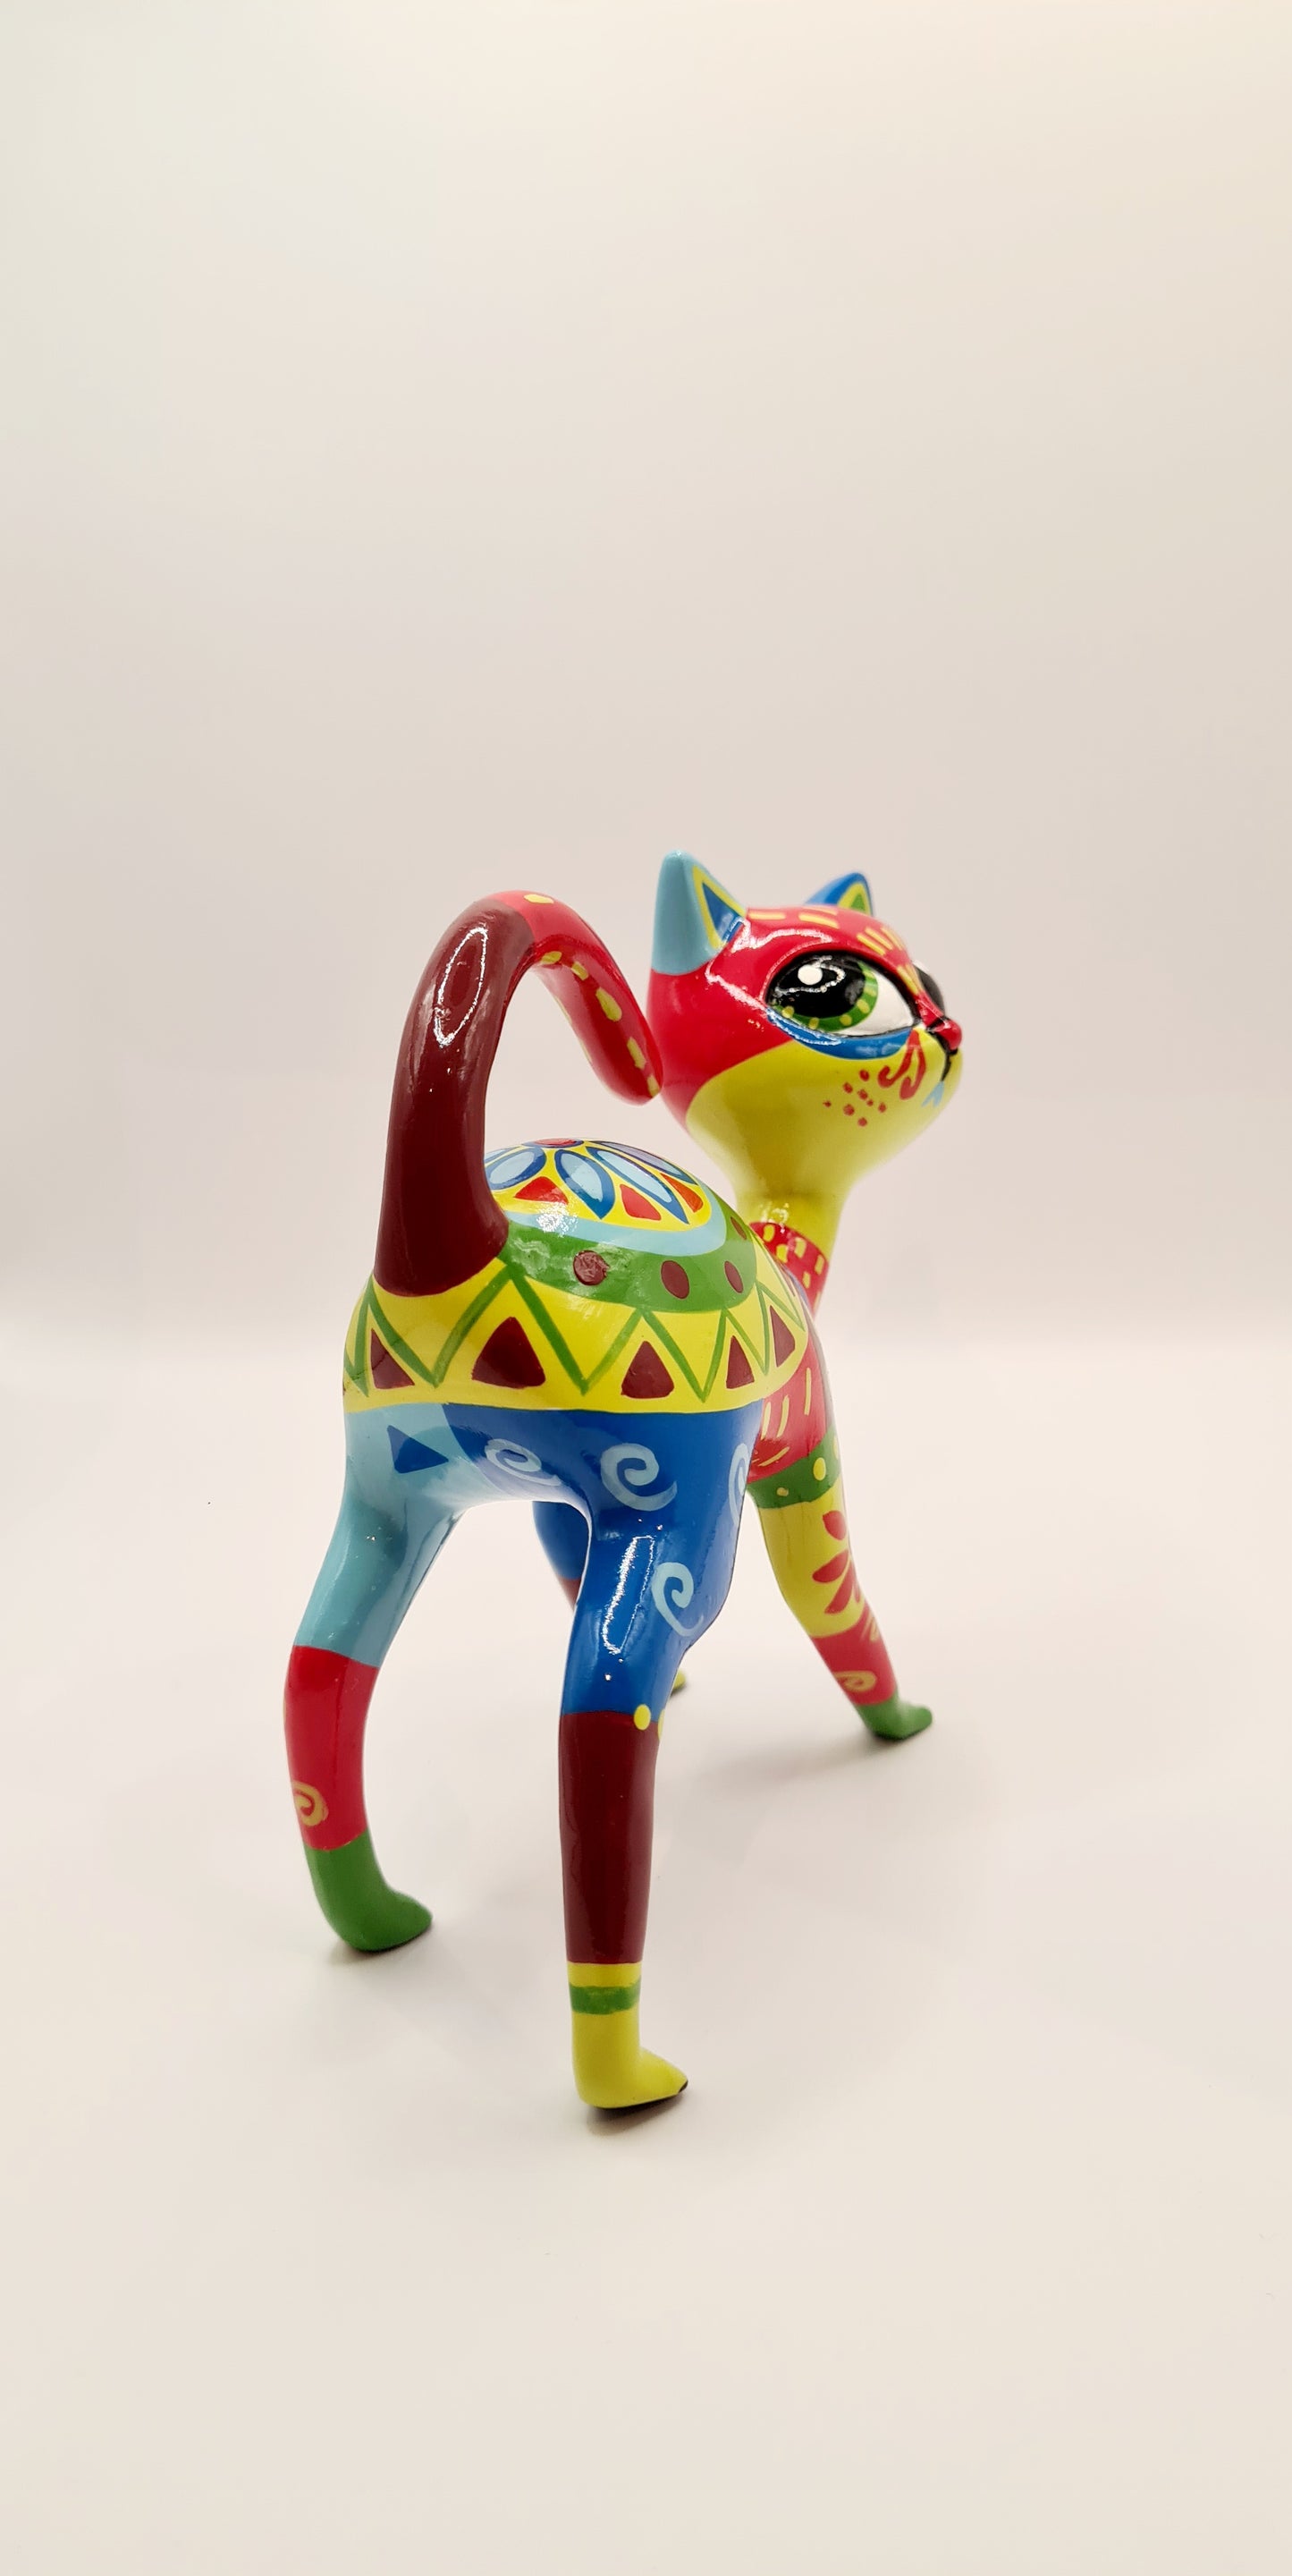 Statue chat mexicain résine multicolore. Longueur 14 centimètres